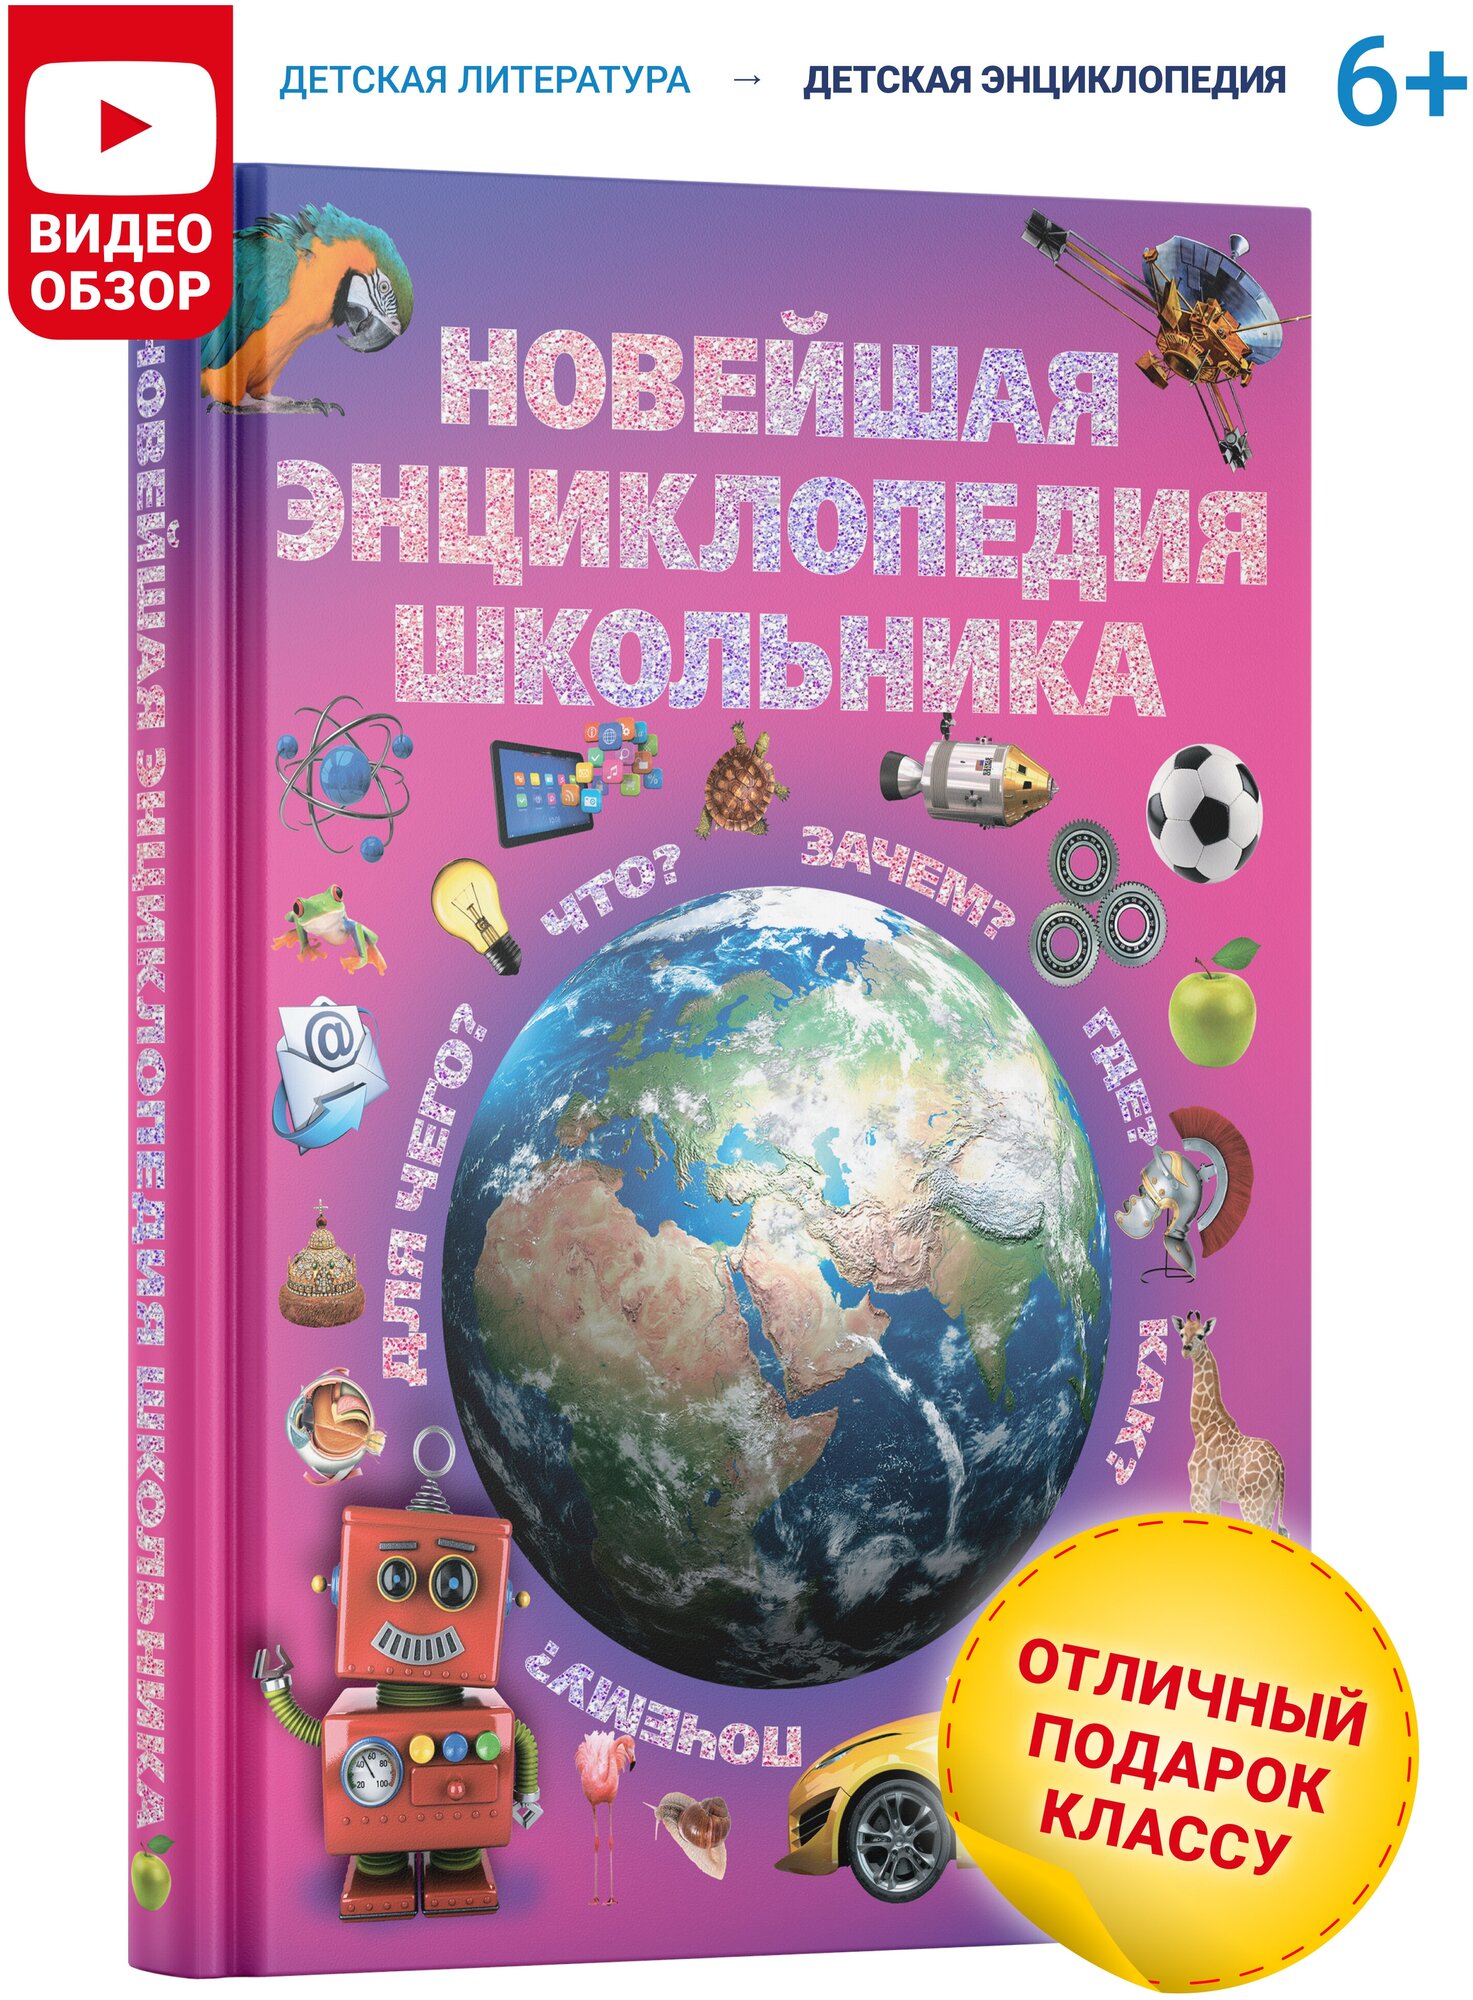 Книга для детей Новейшая энциклопедия школьника развивающая познавательная в подарок